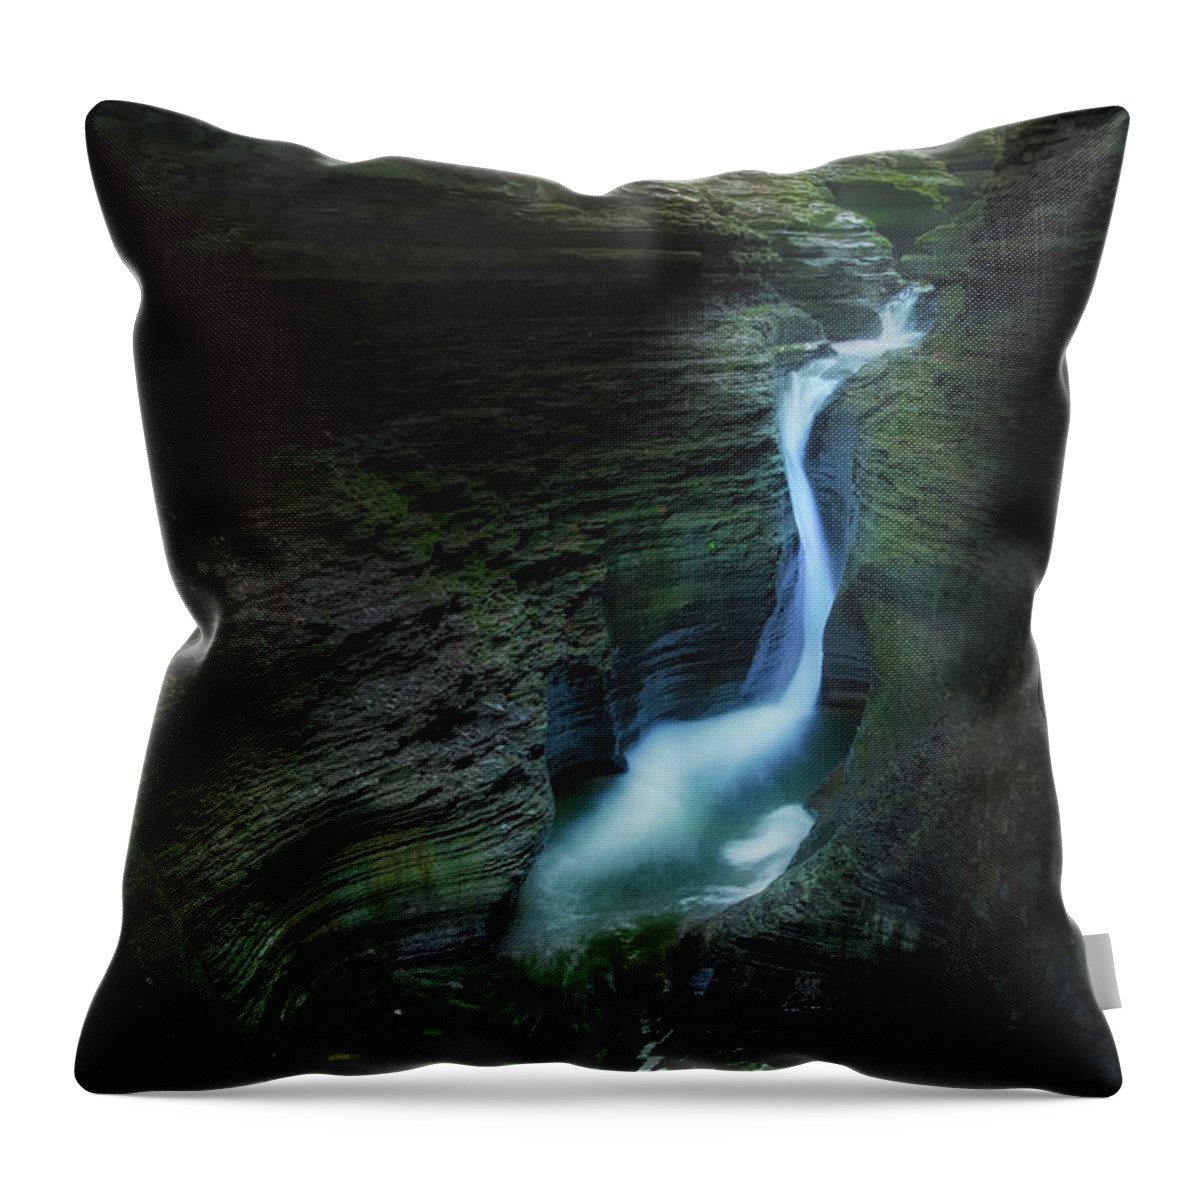 Watkins Glen Throw Pillow featuring the photograph Watkins Glen Gorge by Bill Wakeley